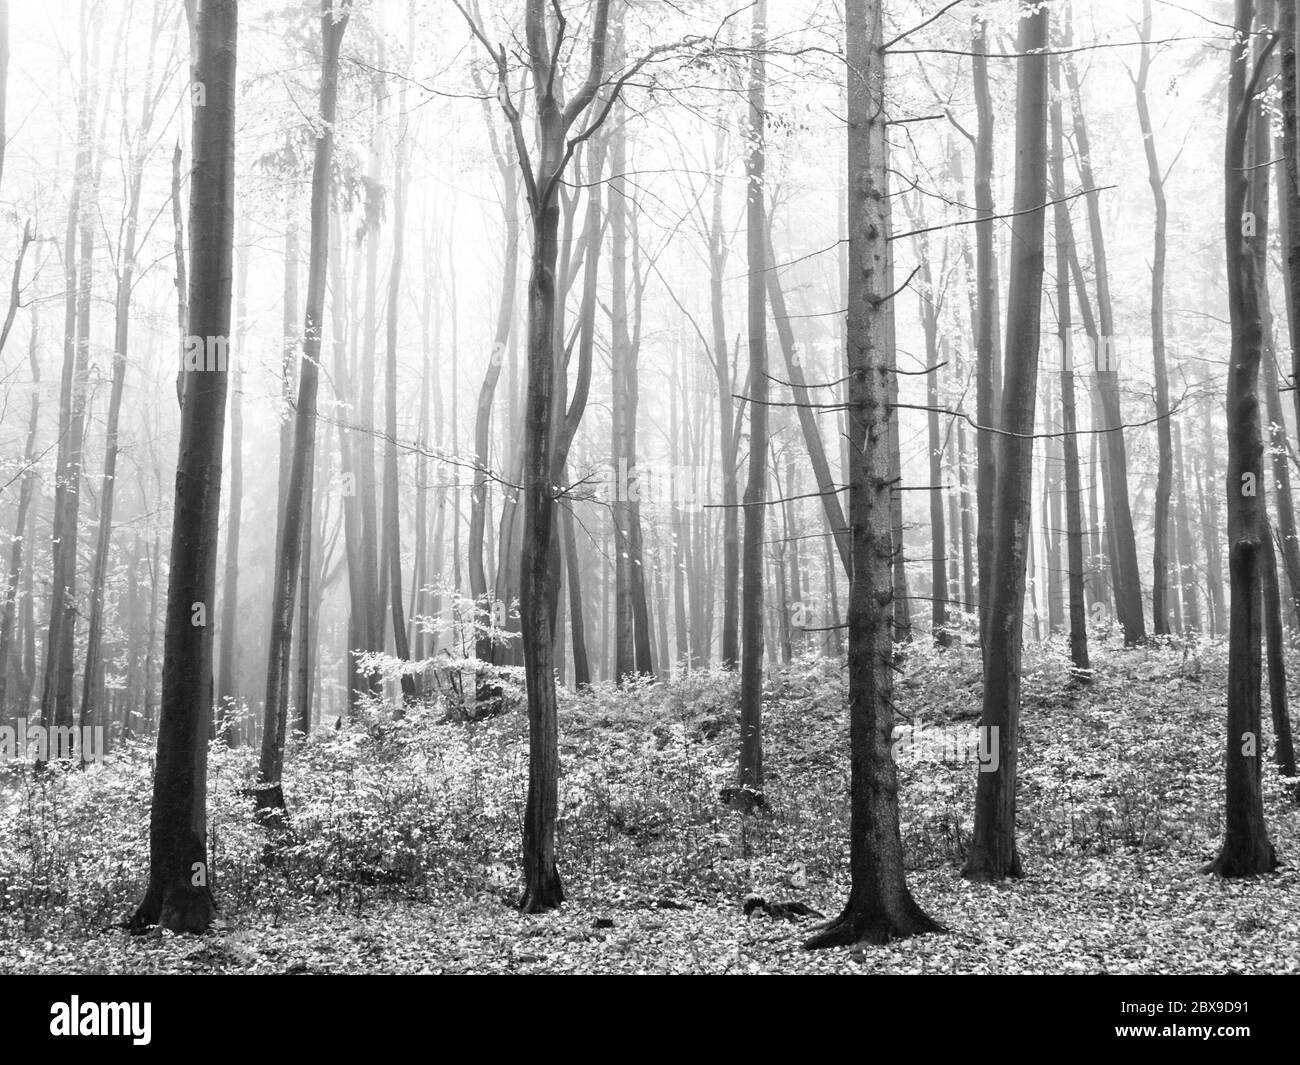 Forêt brumeuse d'automne avec des feuilles d'orange sèches sur un sol. Image en noir et blanc. Banque D'Images